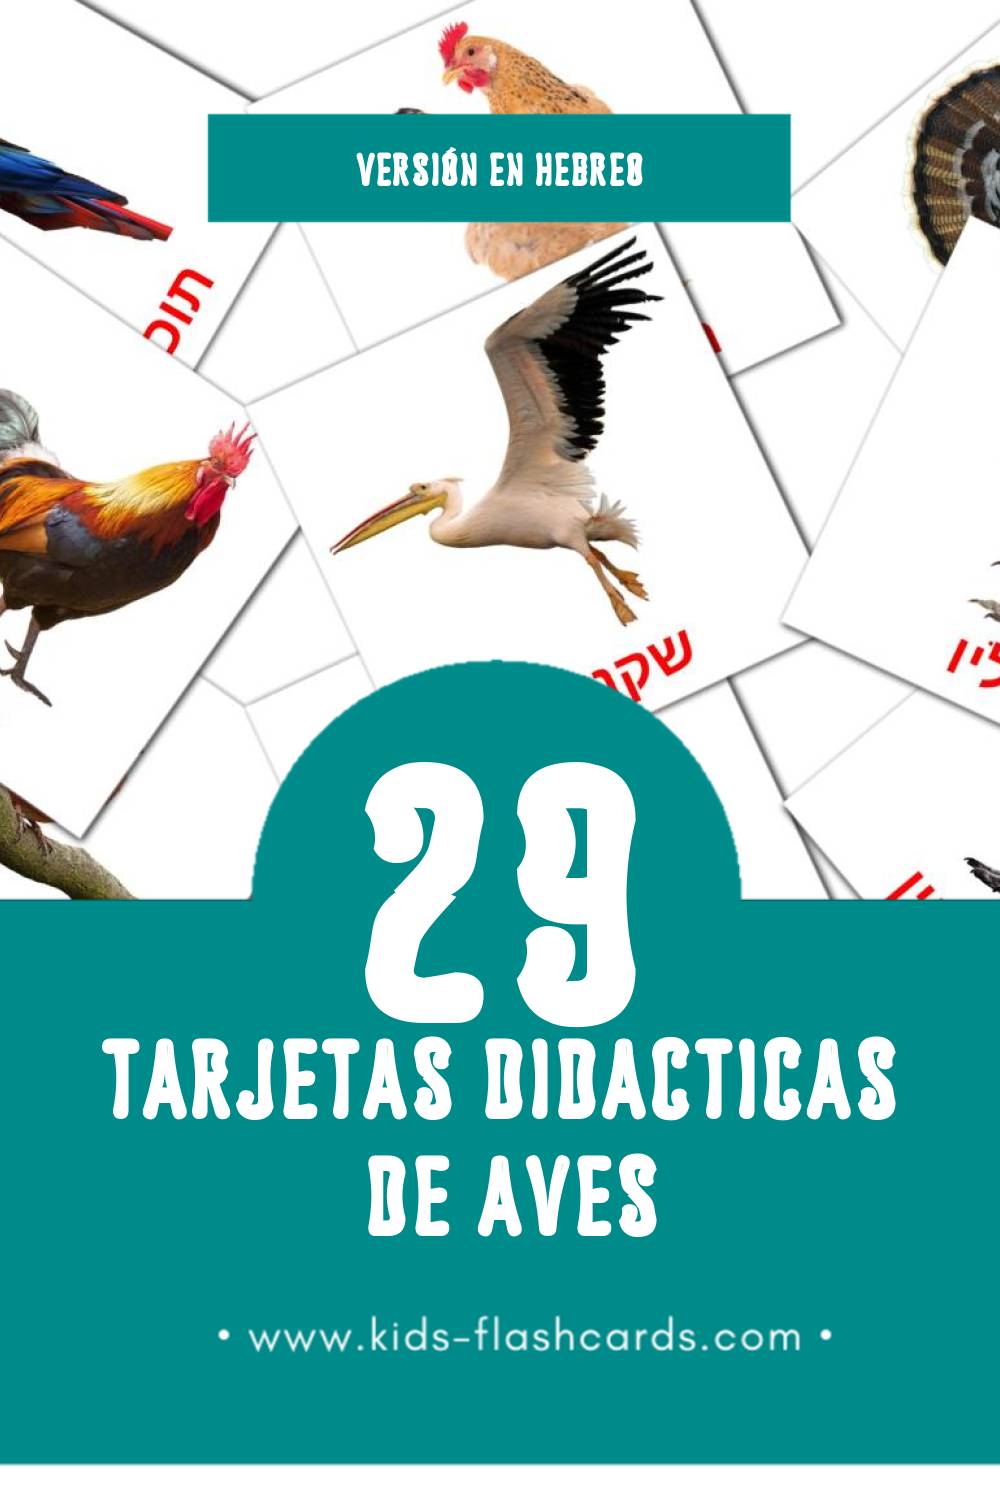 Tarjetas visuales de ציפורים para niños pequeños (29 tarjetas en Hebreo)